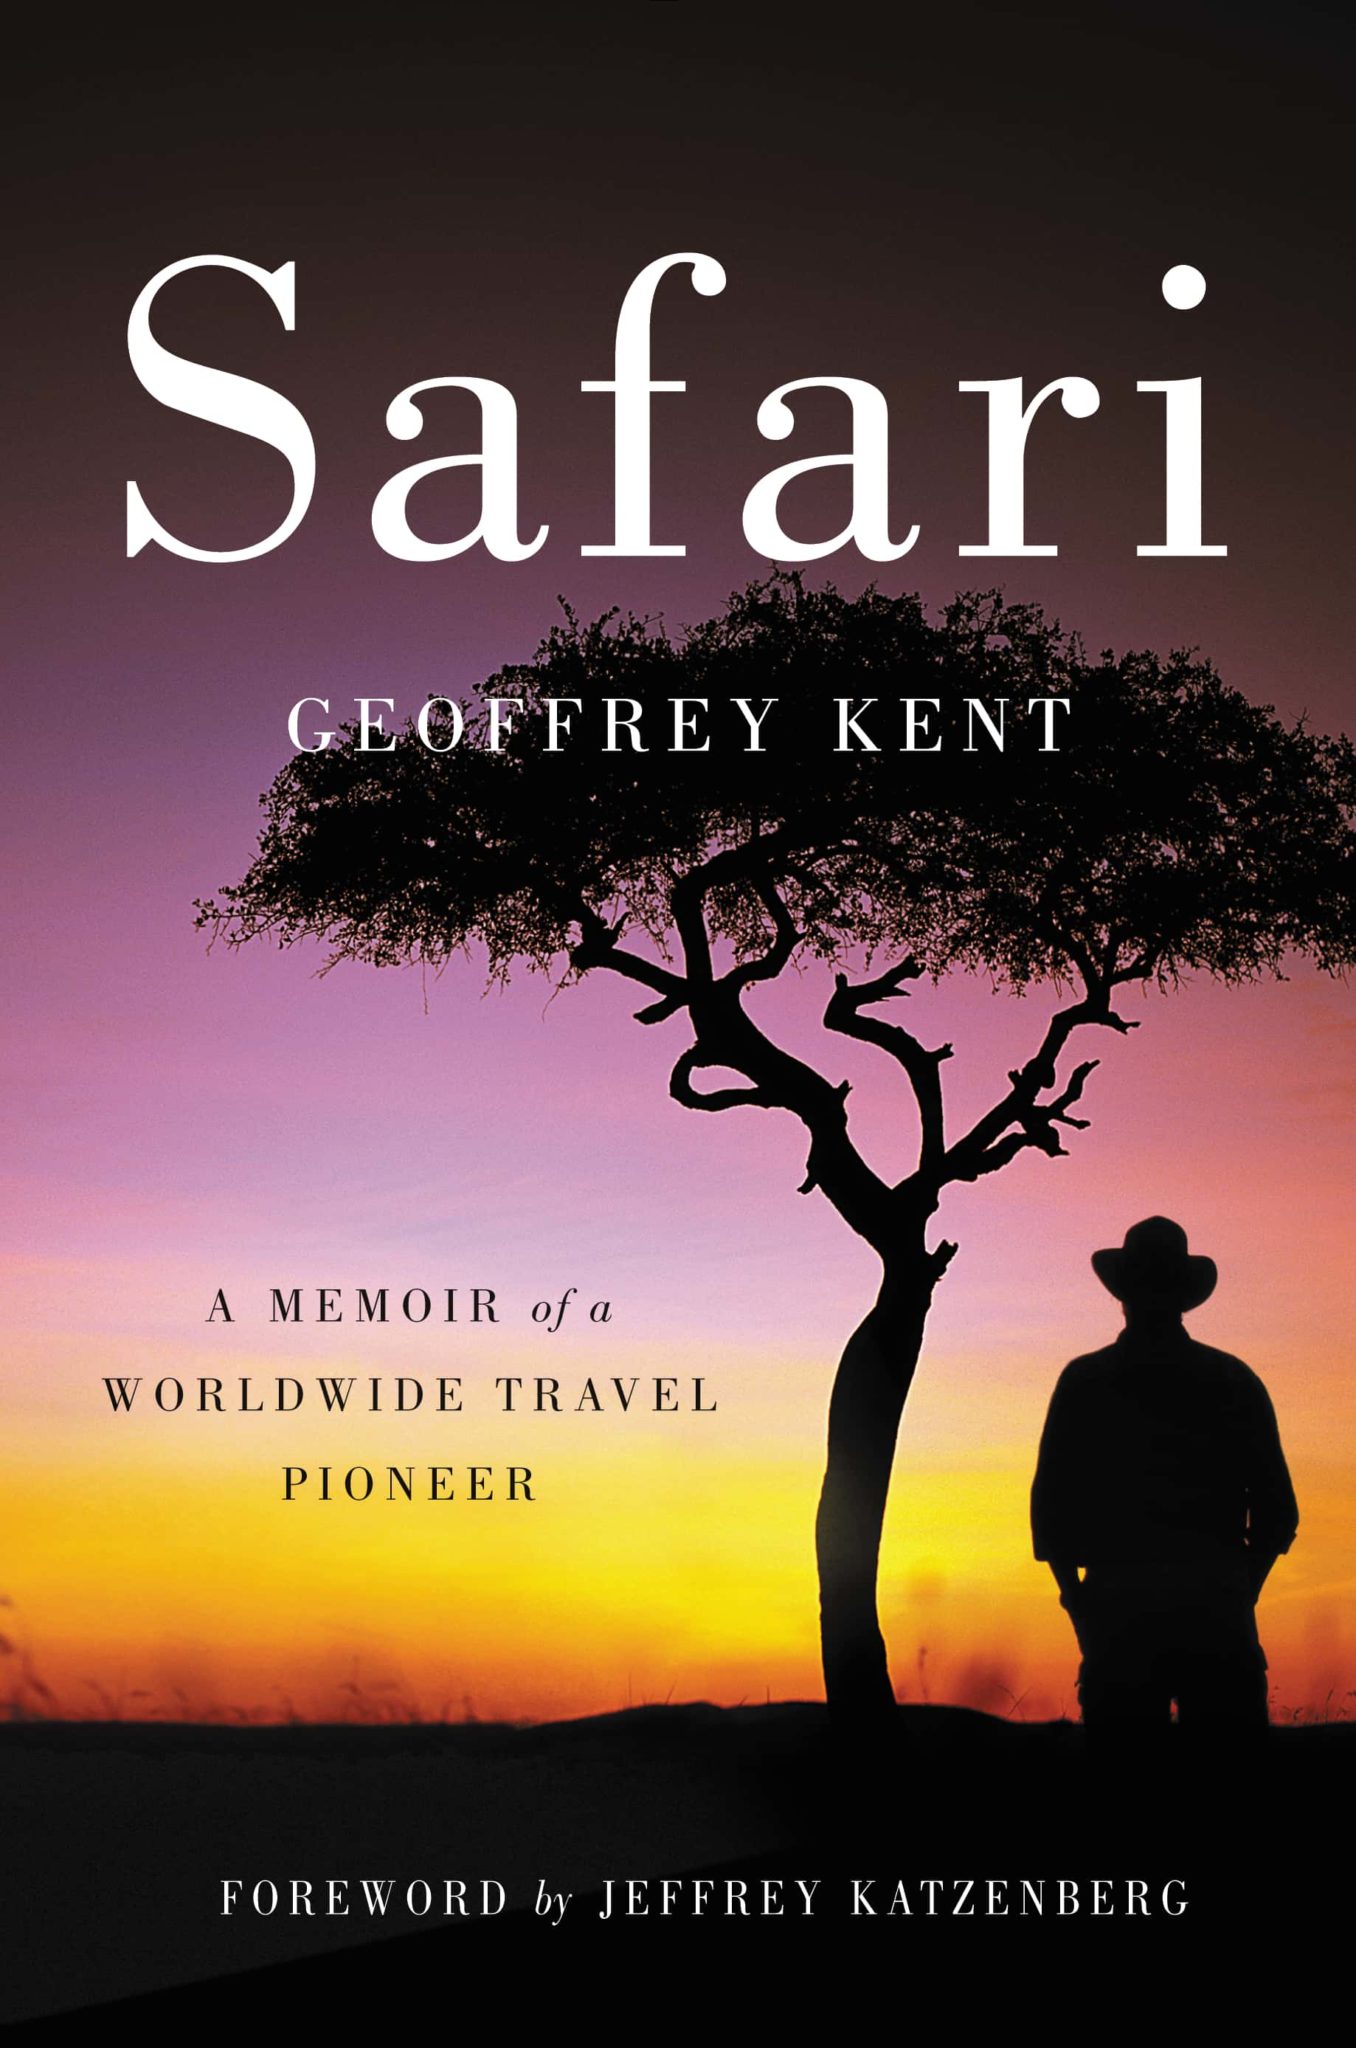 safari books download github